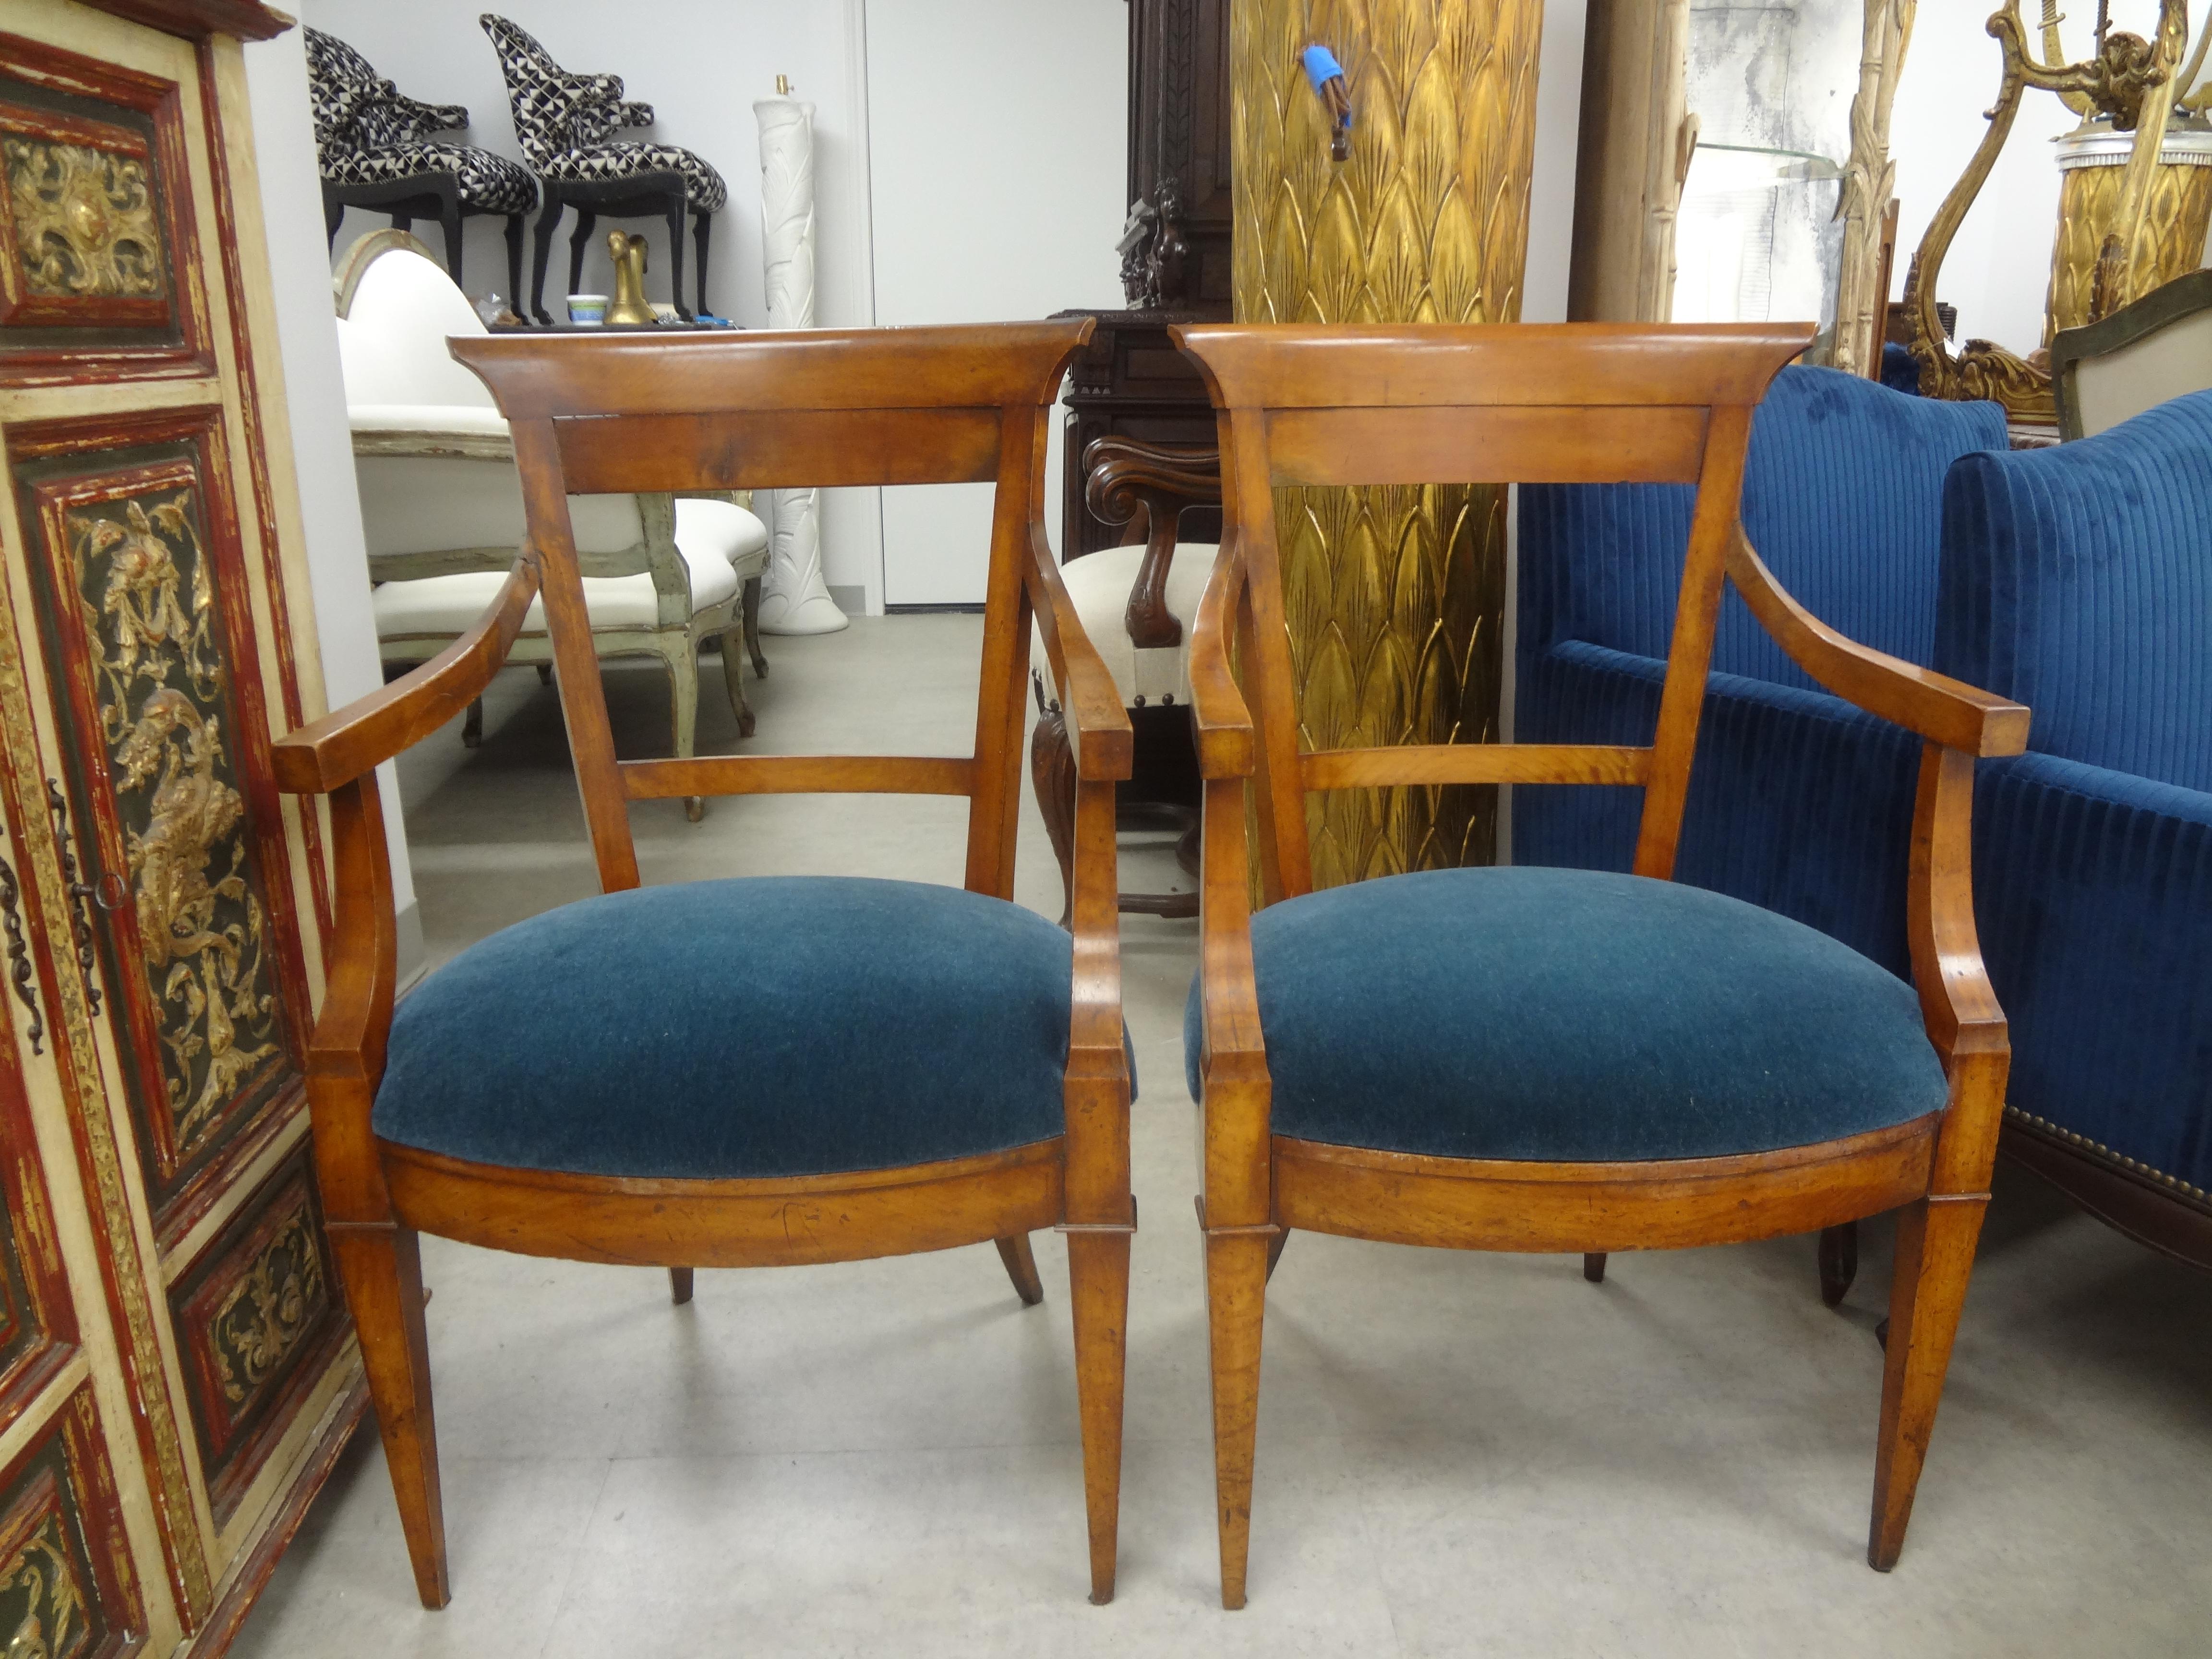 Paar französische Sessel oder Beistellstühle aus Nussbaum im Louis-XVI-Stil.
Paar französische Sessel oder Beistellstühle aus Nussbaum im Louis-XVI-Stil. Dieses hübsche Paar französischer Stühle im Louis XVI-, Biedermeier-, Directoire- oder